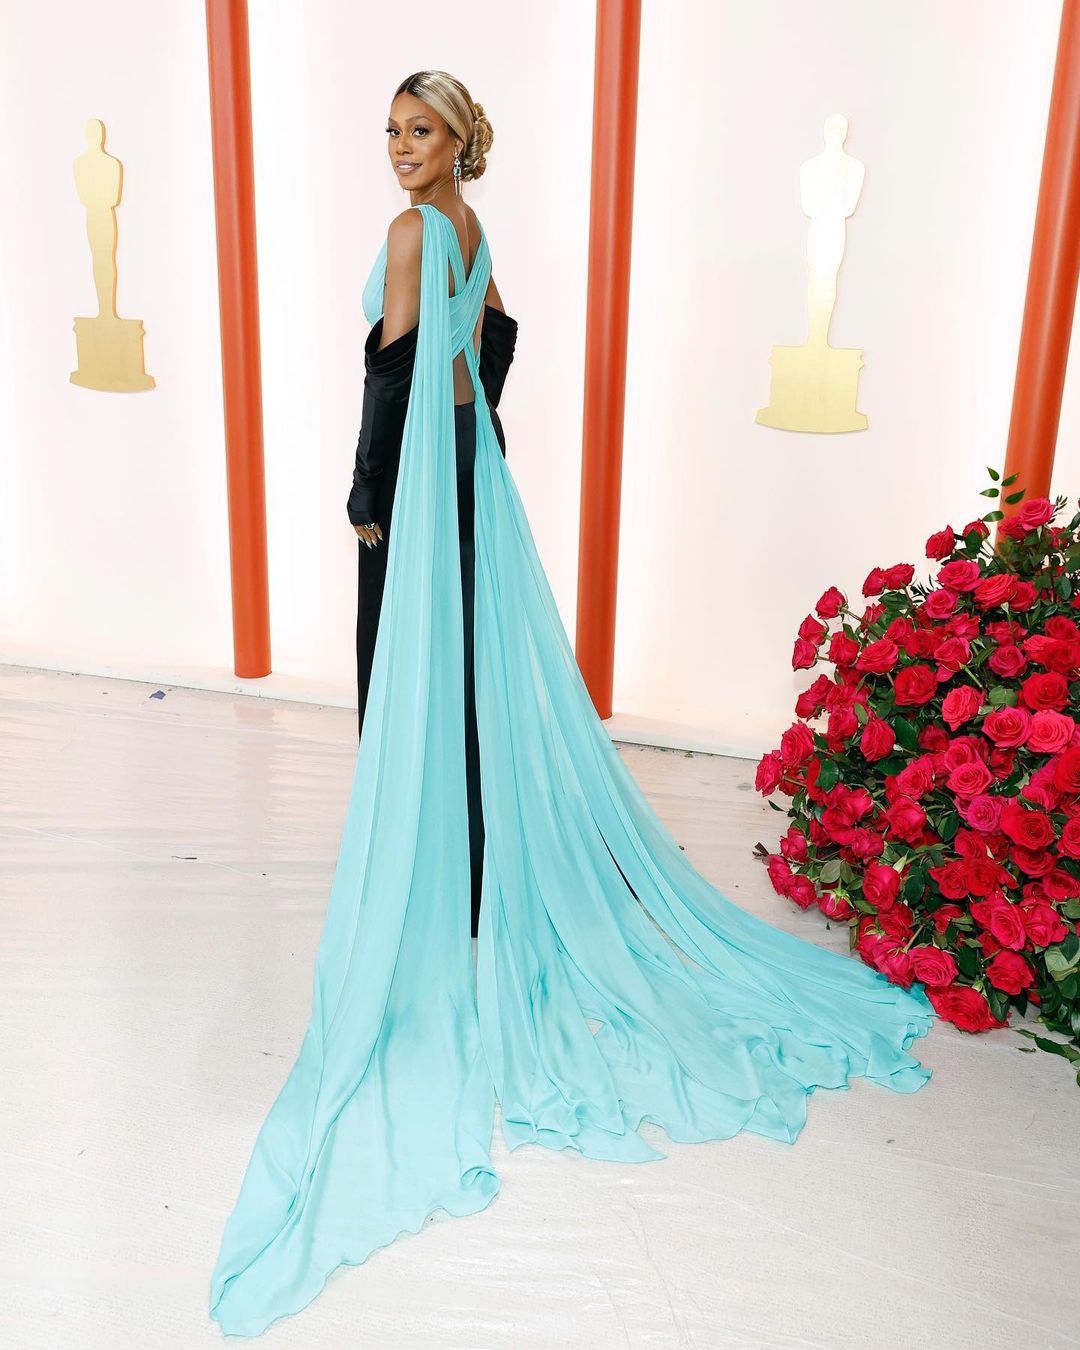 Premios Oscar 2023: todos los looks de la alfombra roja